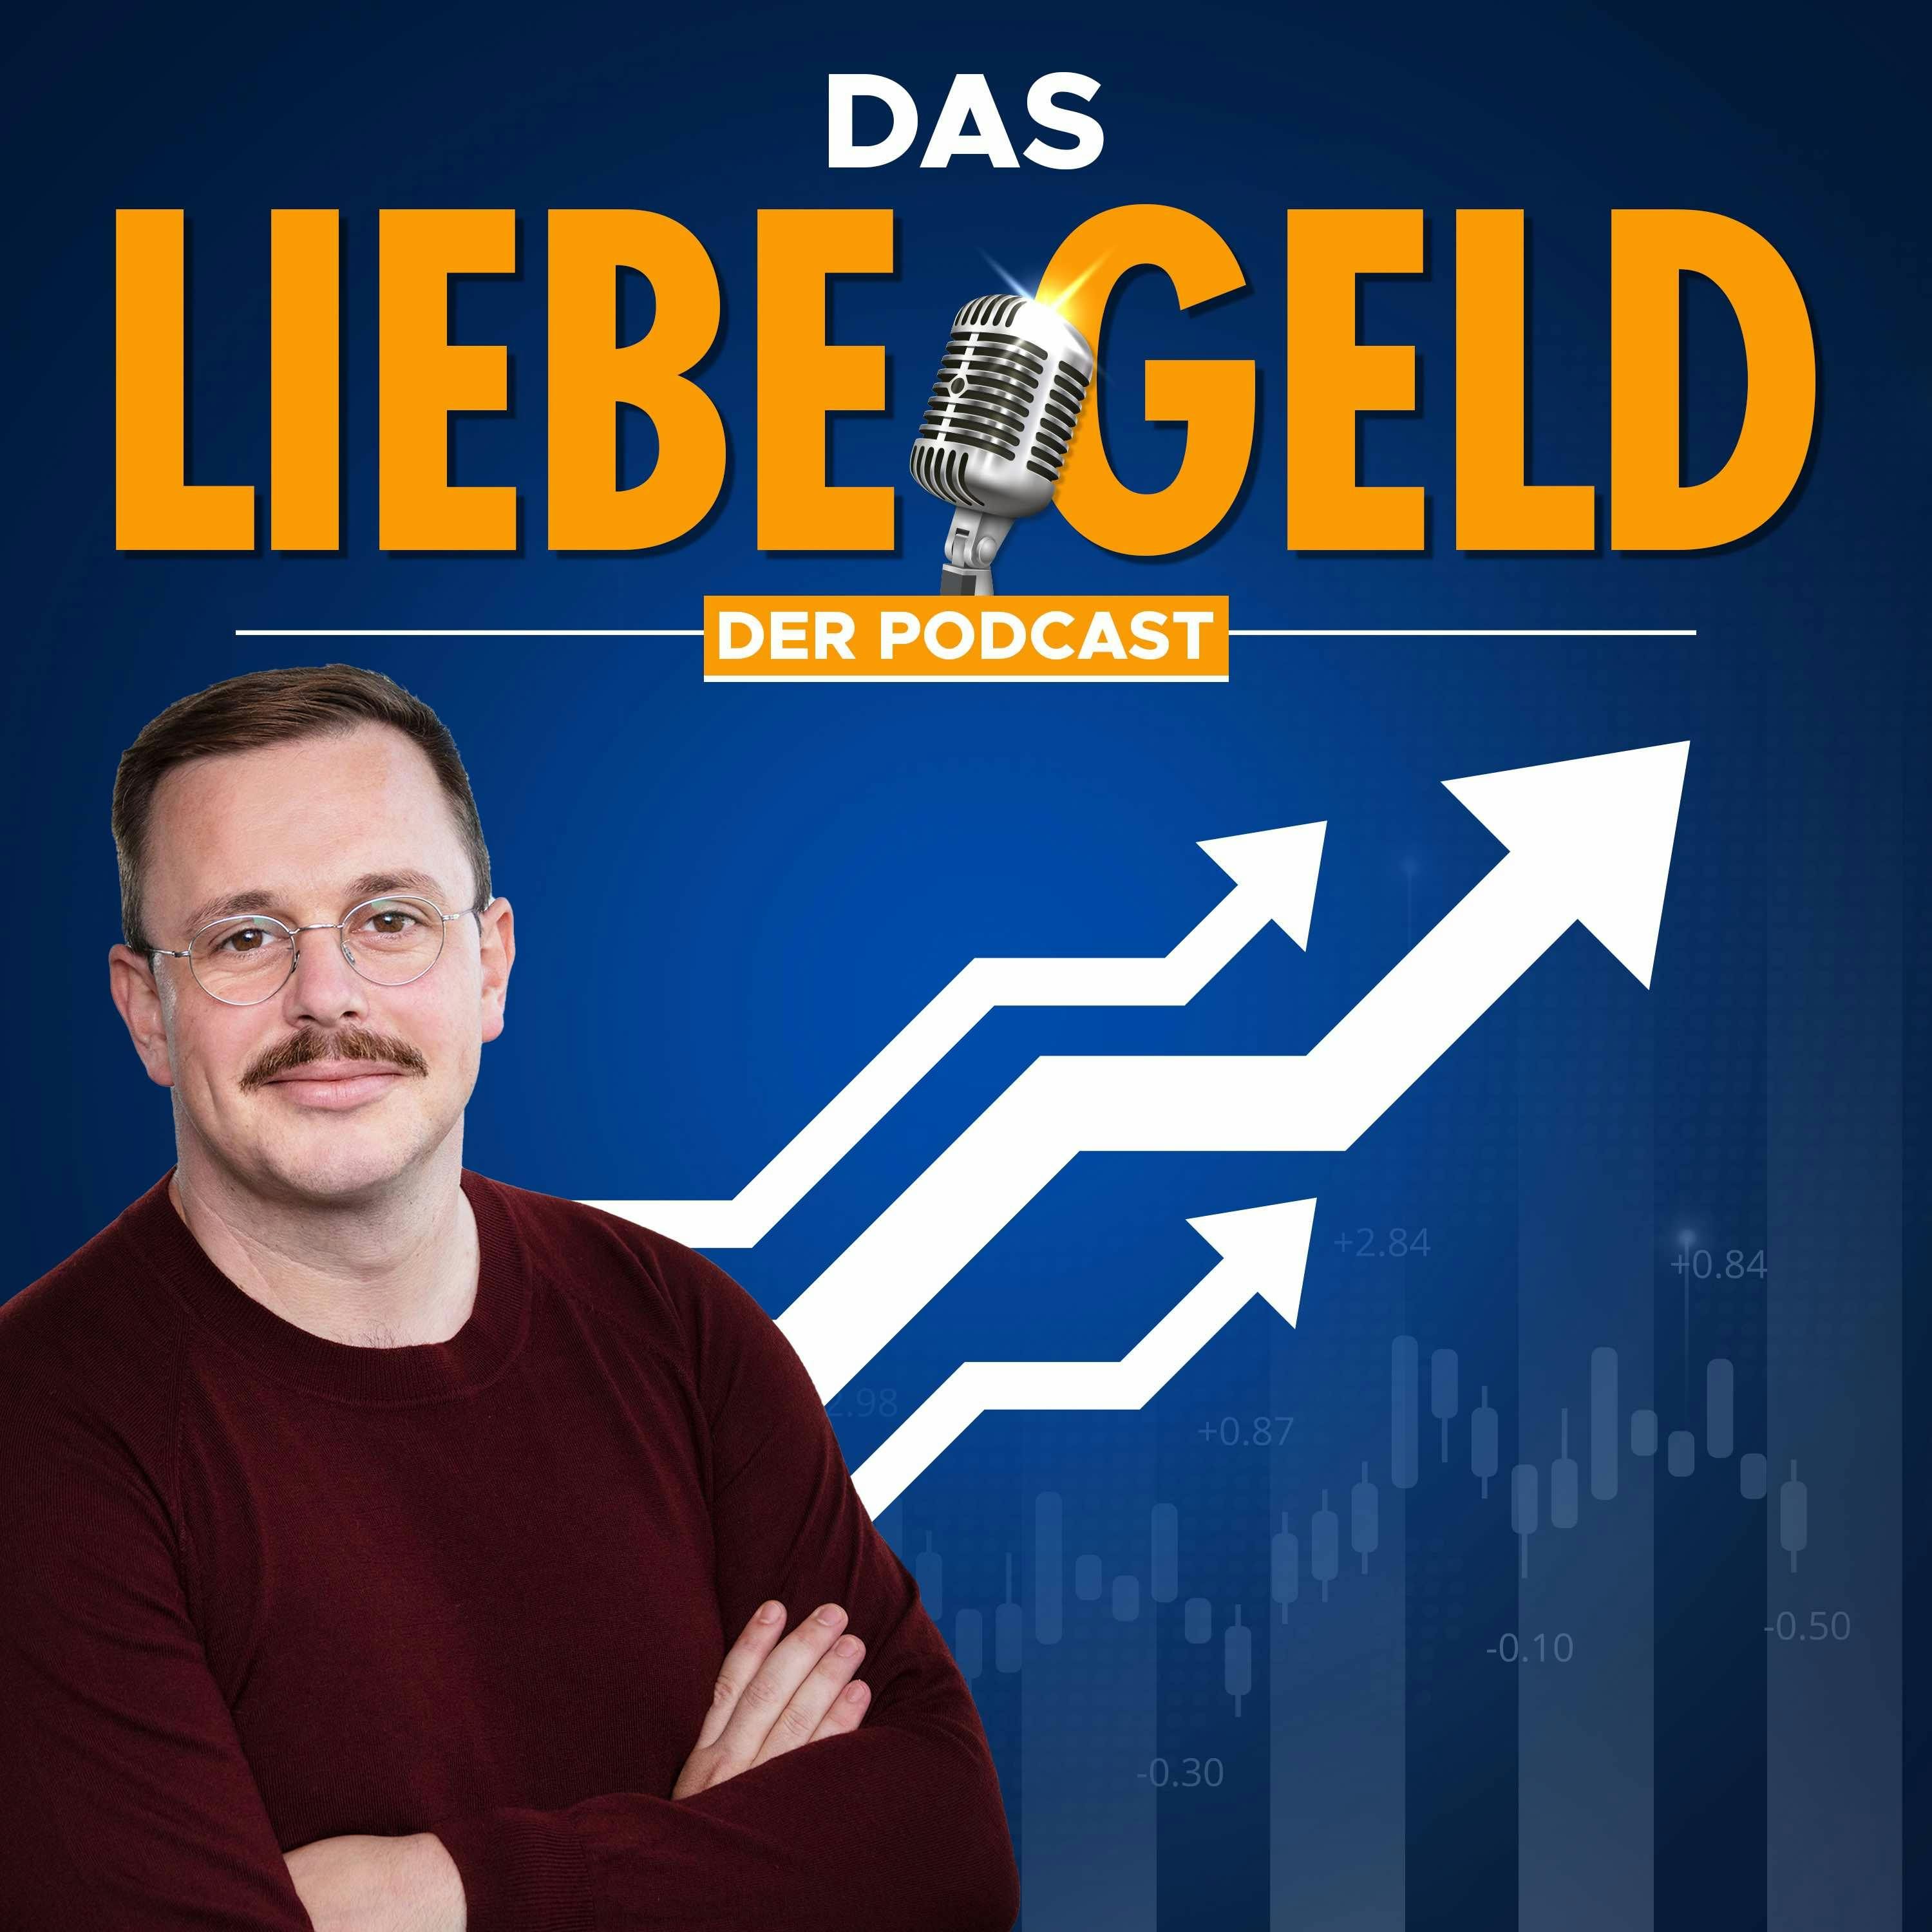 Das liebe Geld - Finanzen und Vermögensaufbau - Podcast